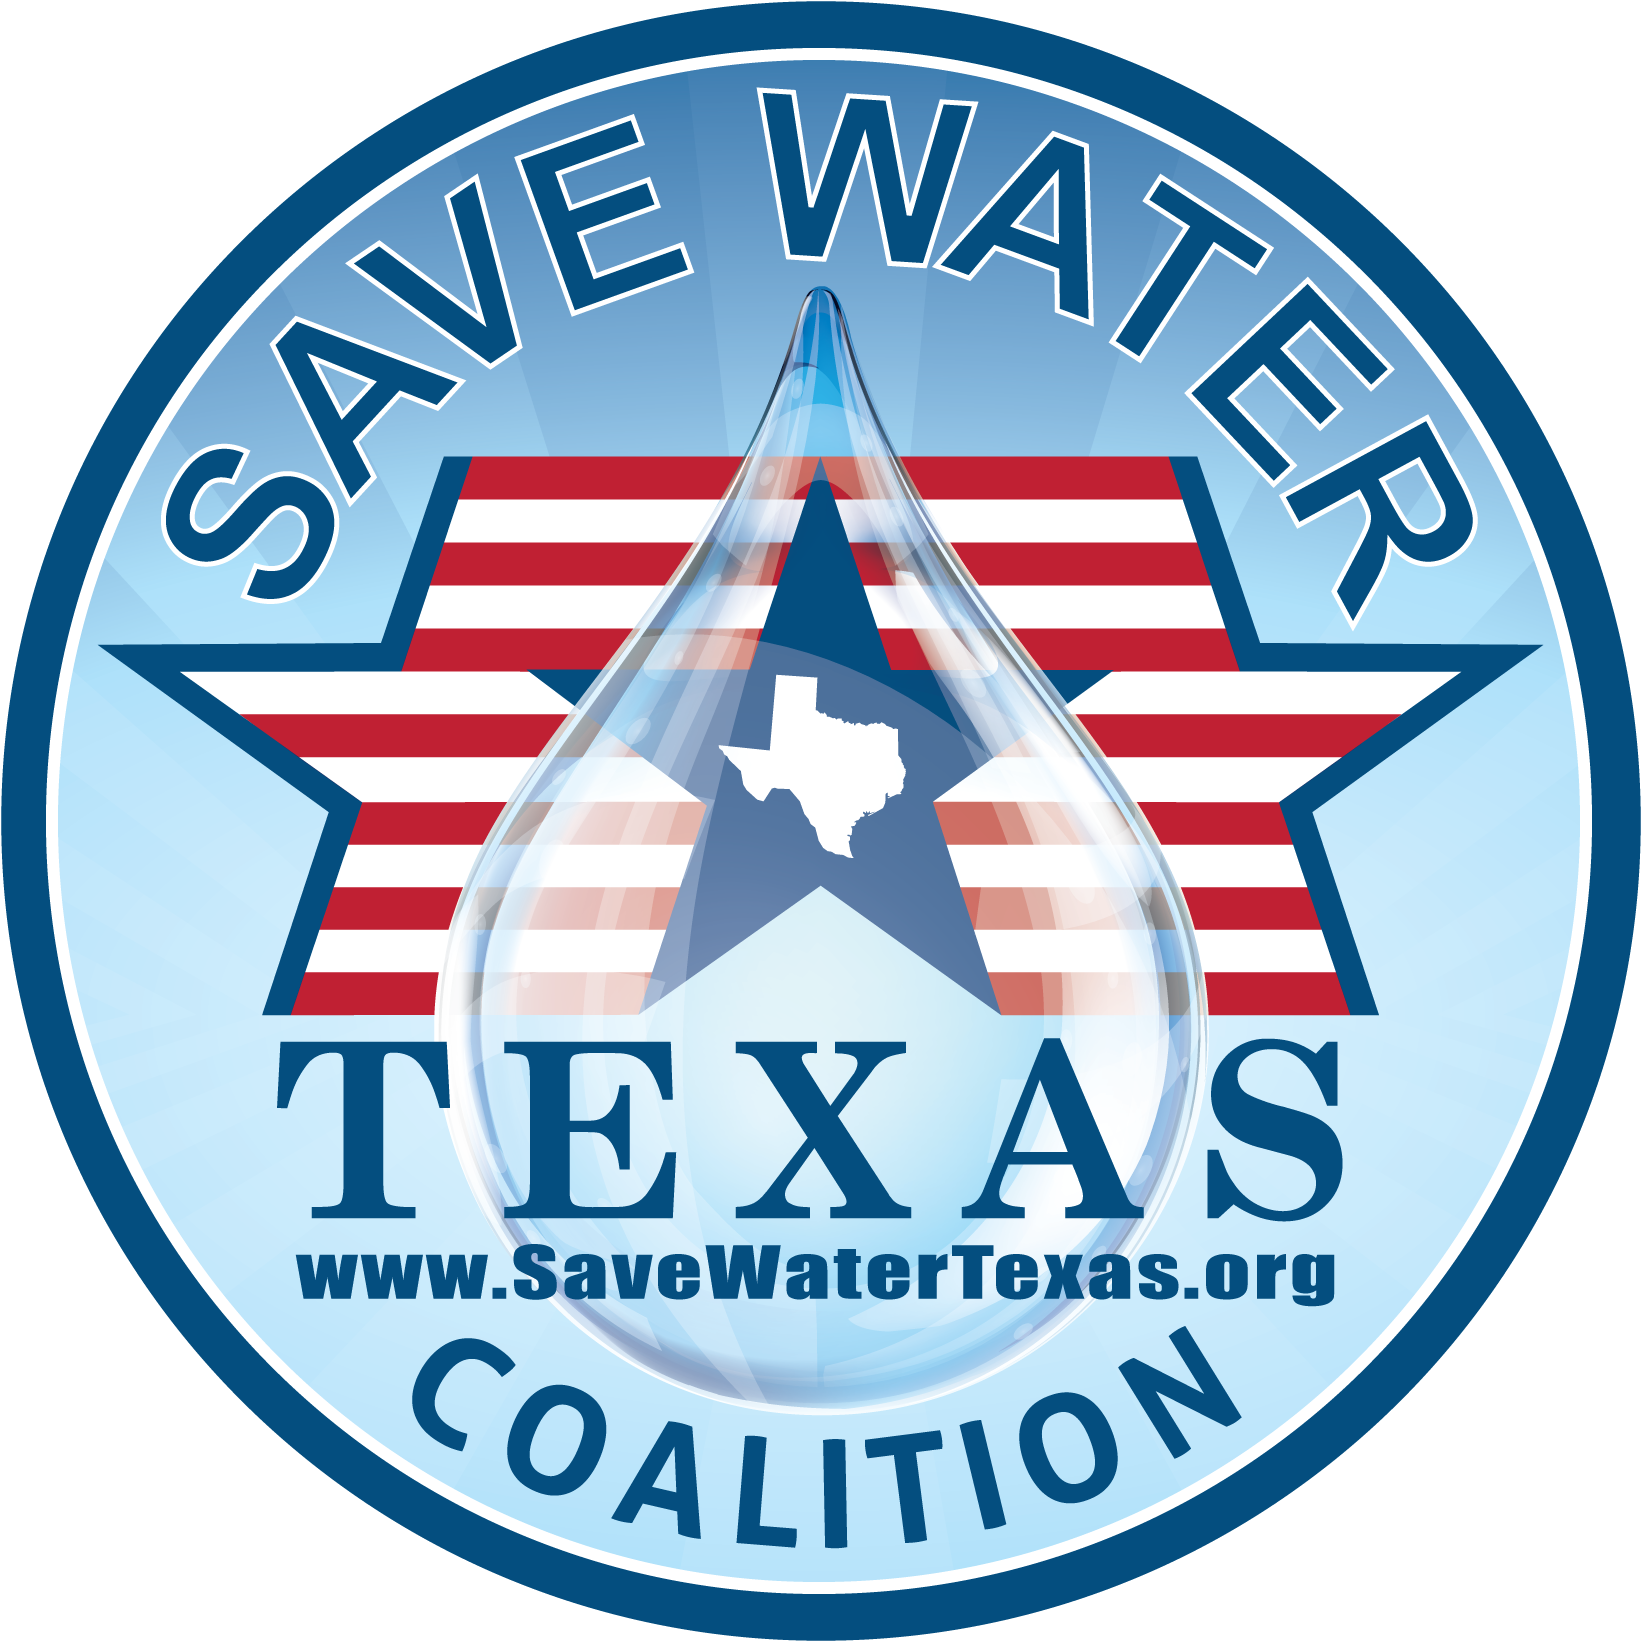 Save Water Texas Coa - Emblem Clipart (1728x1728), Png Download